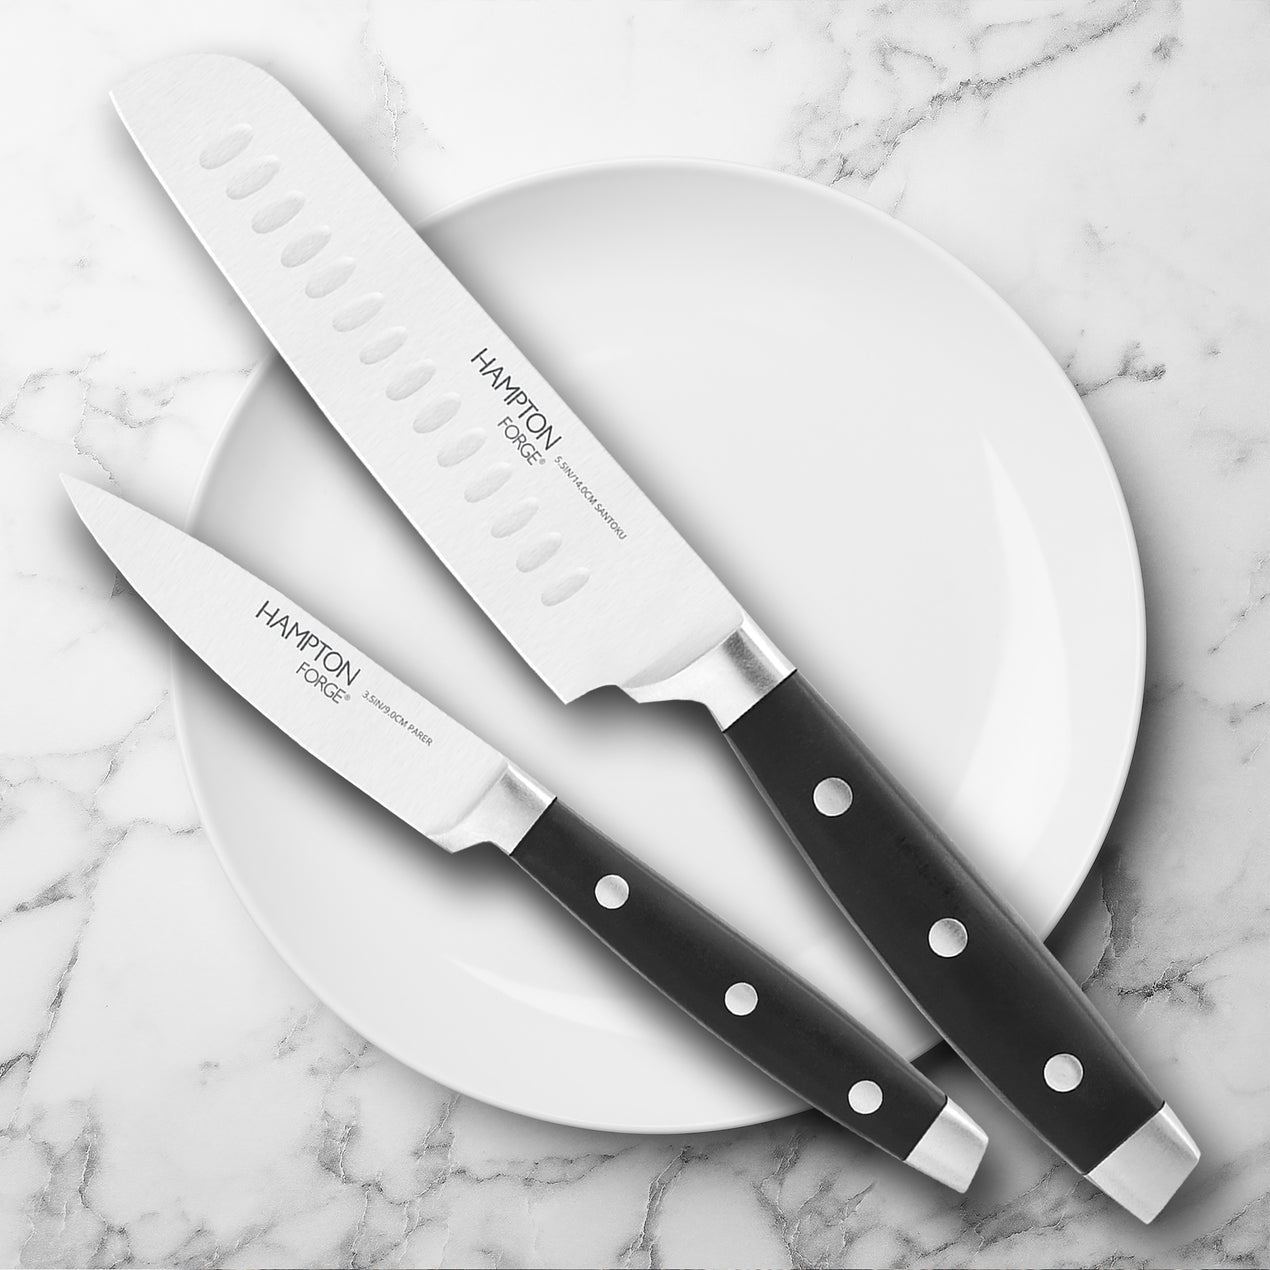 15 Piece Kitchen Chef Knife Set